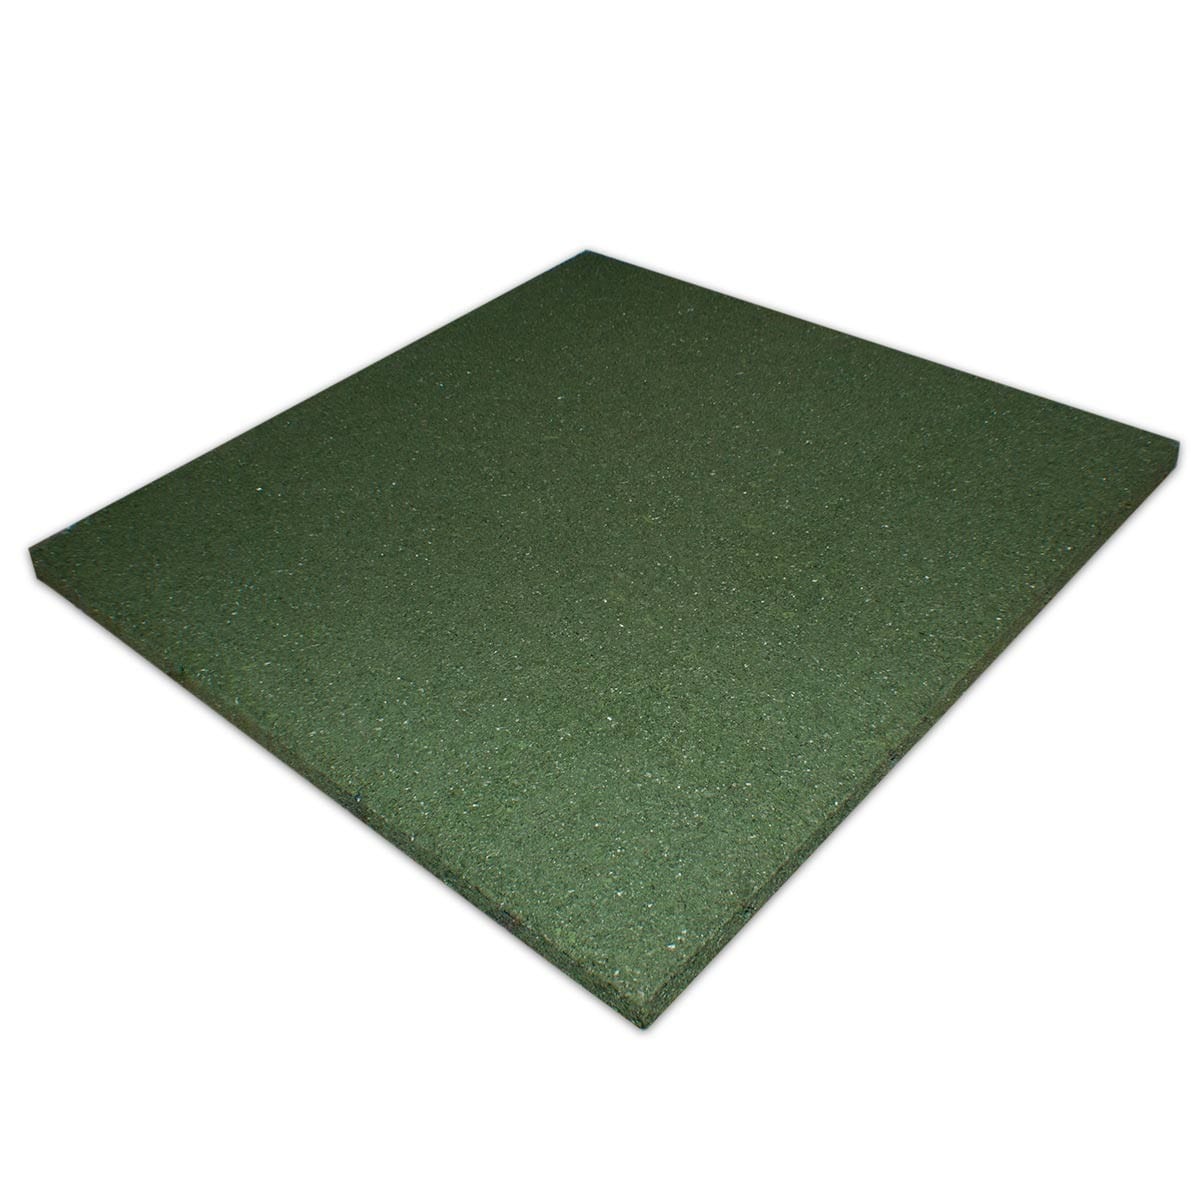 30mm Rubber Play Tiles - Green 500x500mm | MatsGrids